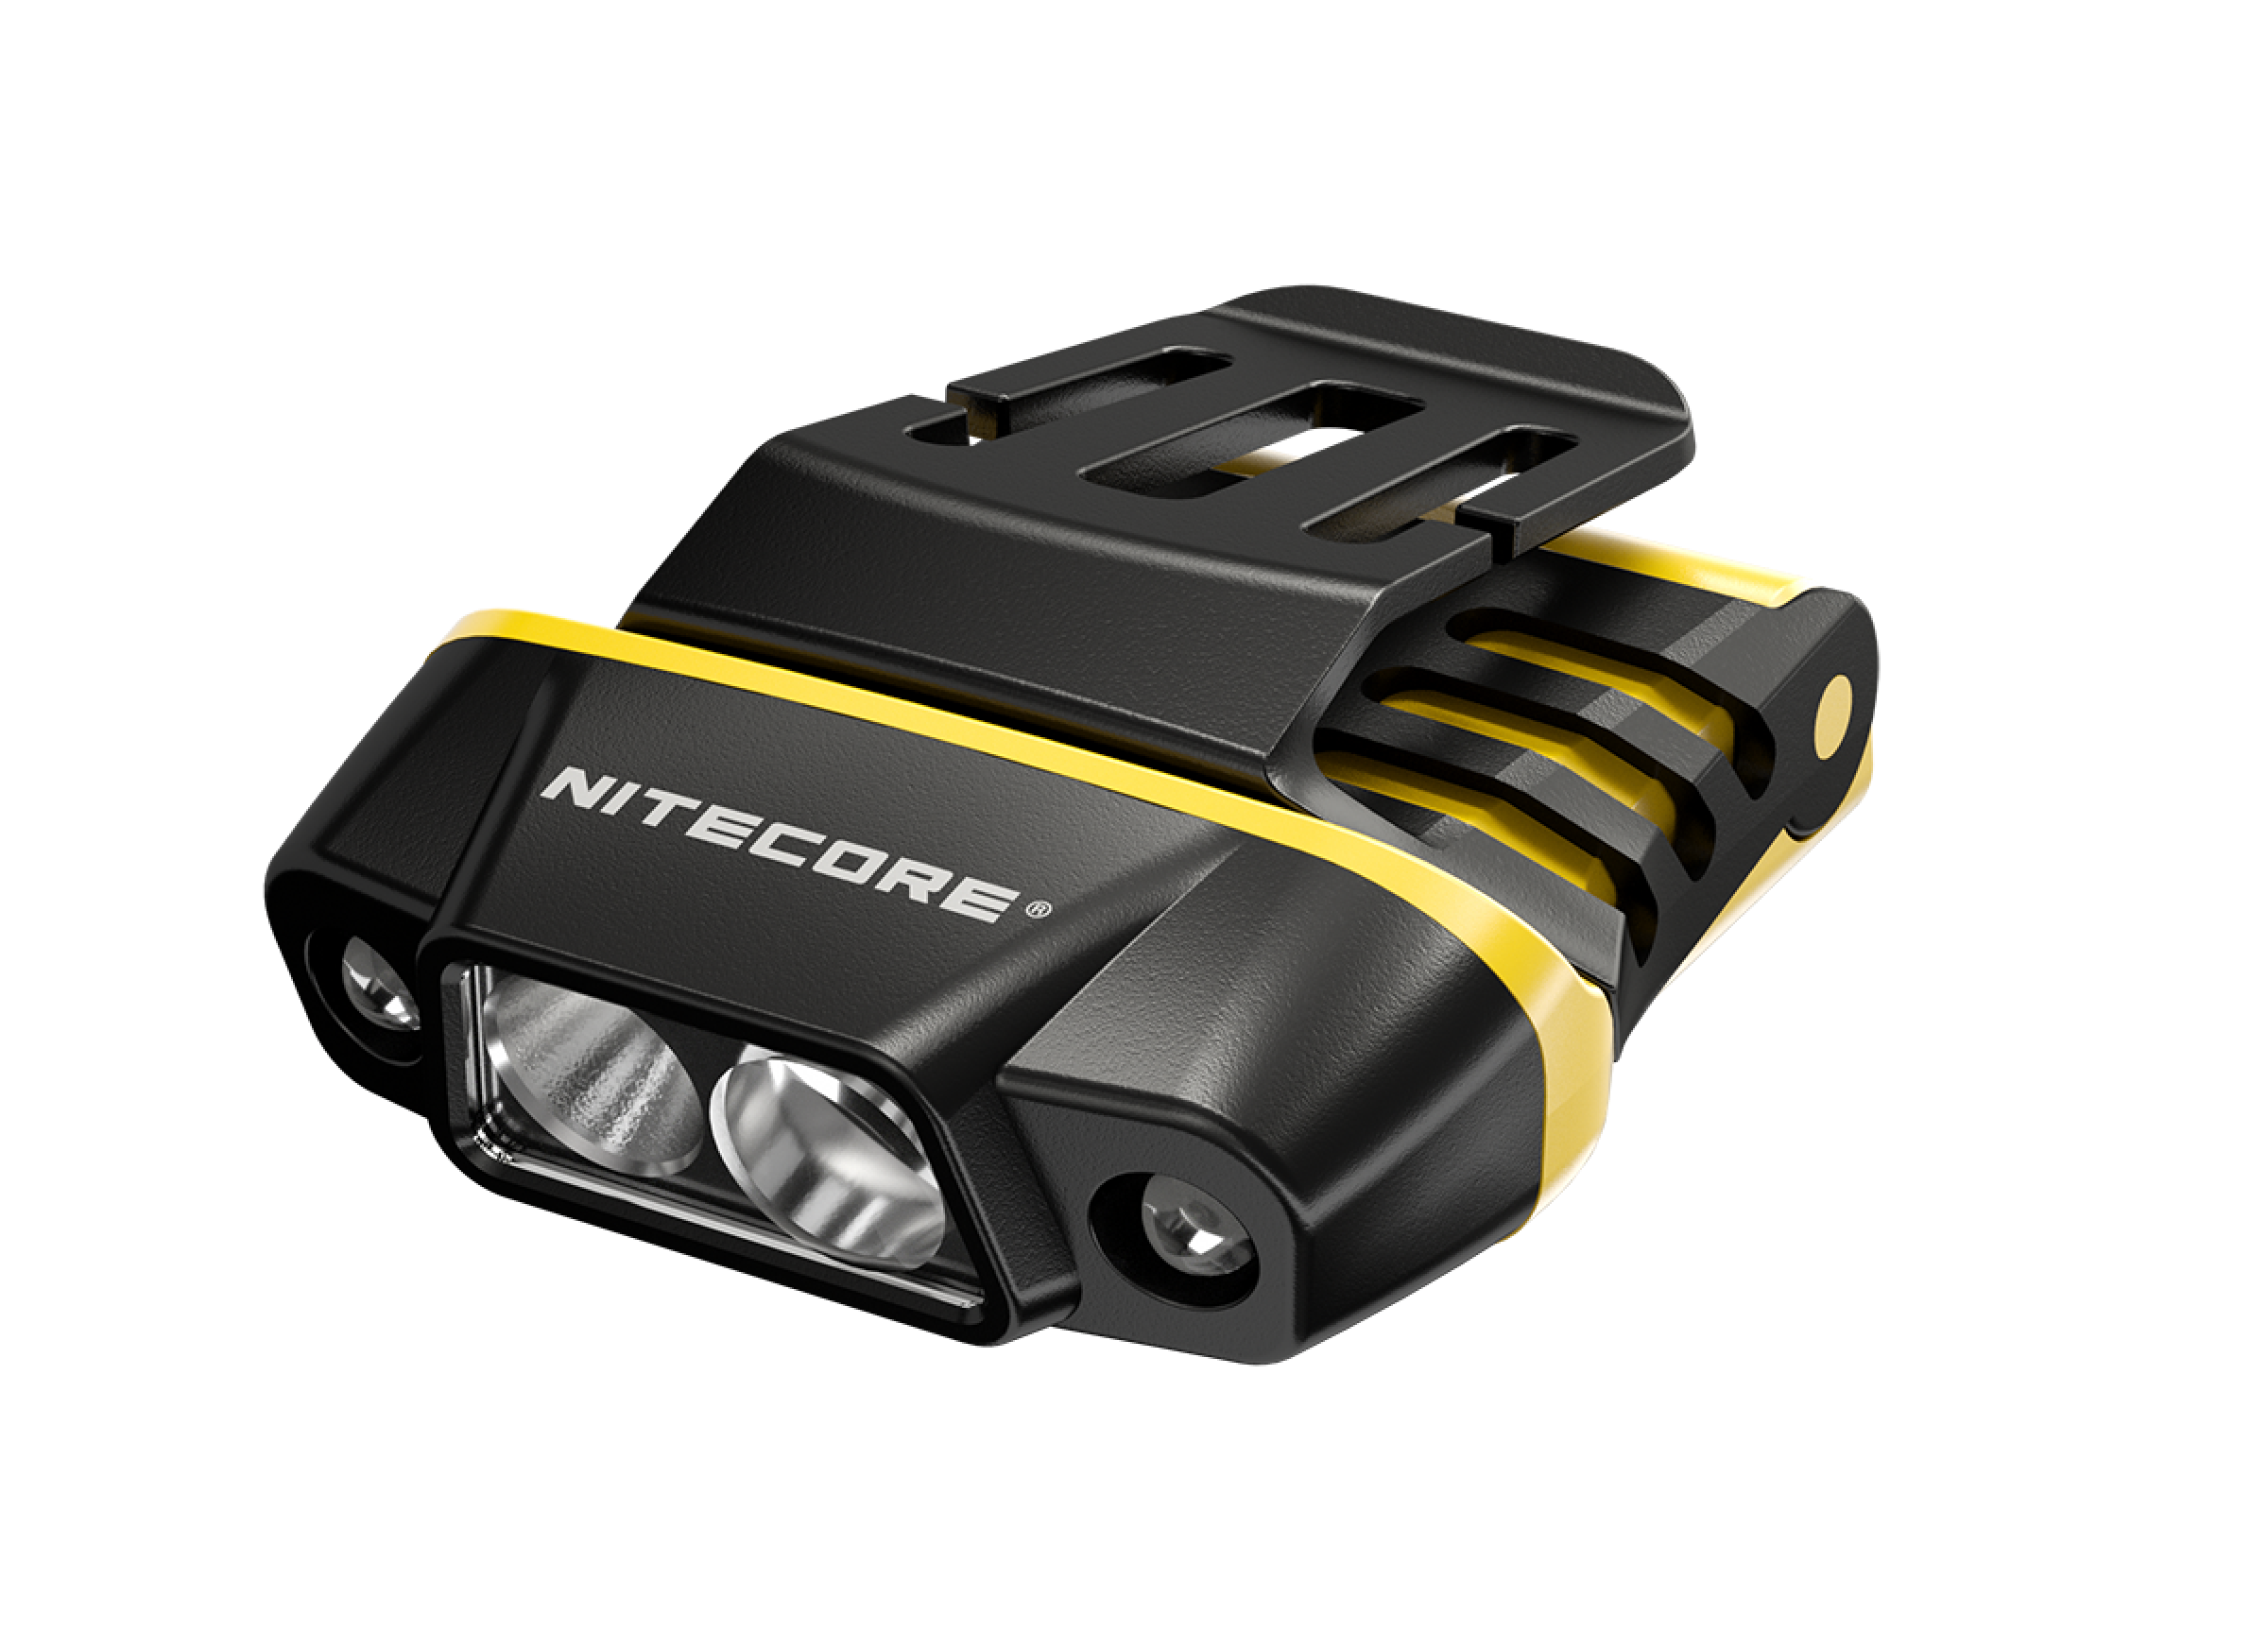 Nitecore NU11 - clip light with IR sensor